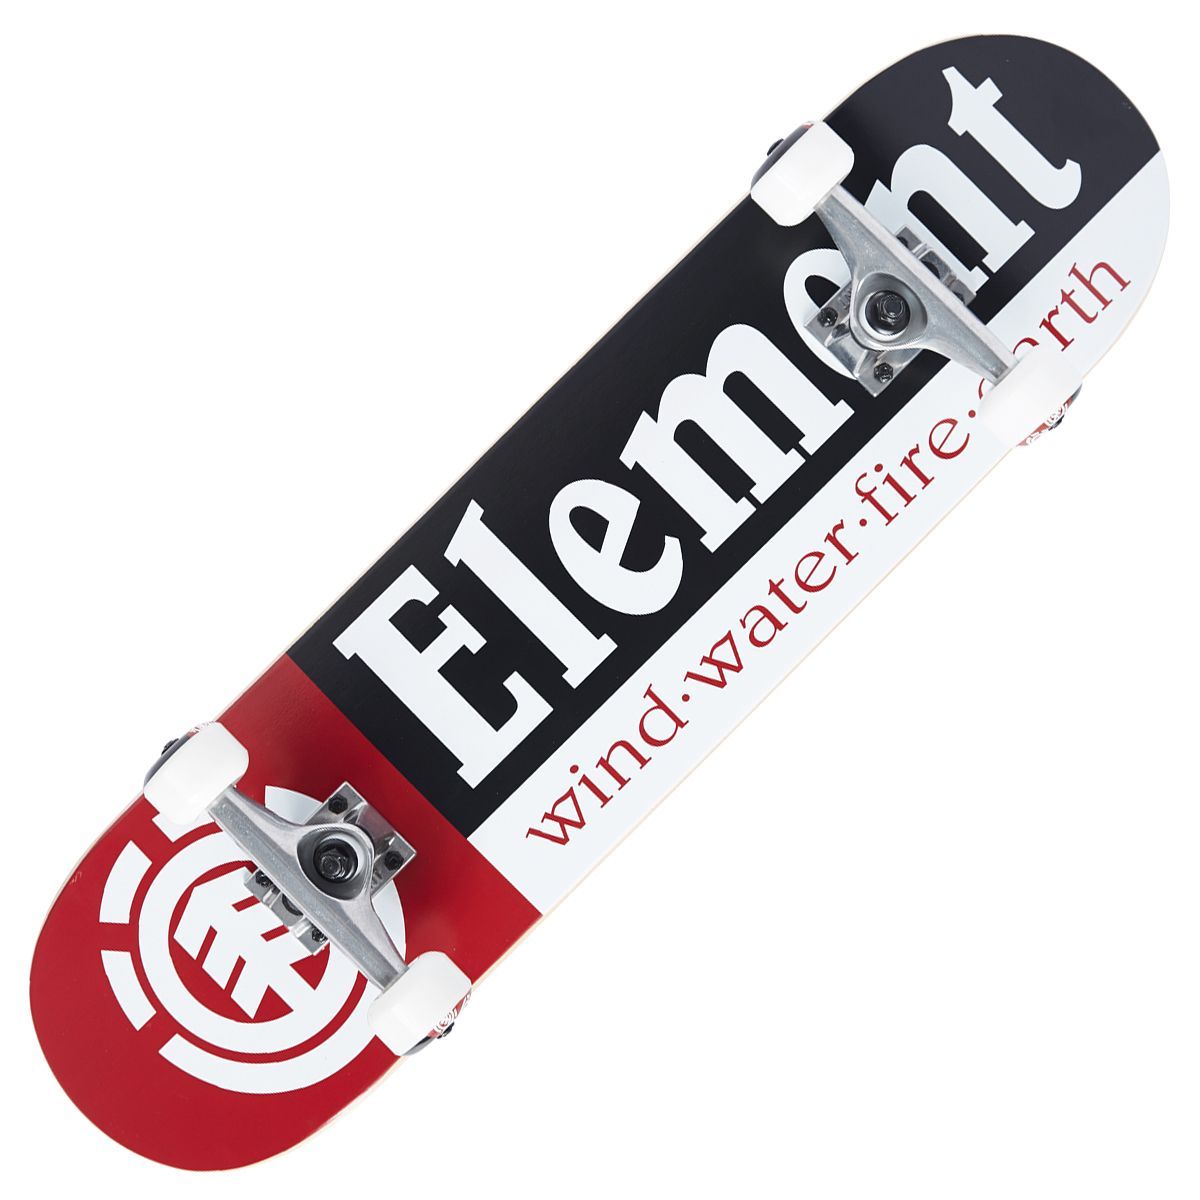 kiem Vorige verlichten ELEMENT "Section" pre-built complete skateboard 7.75 inches